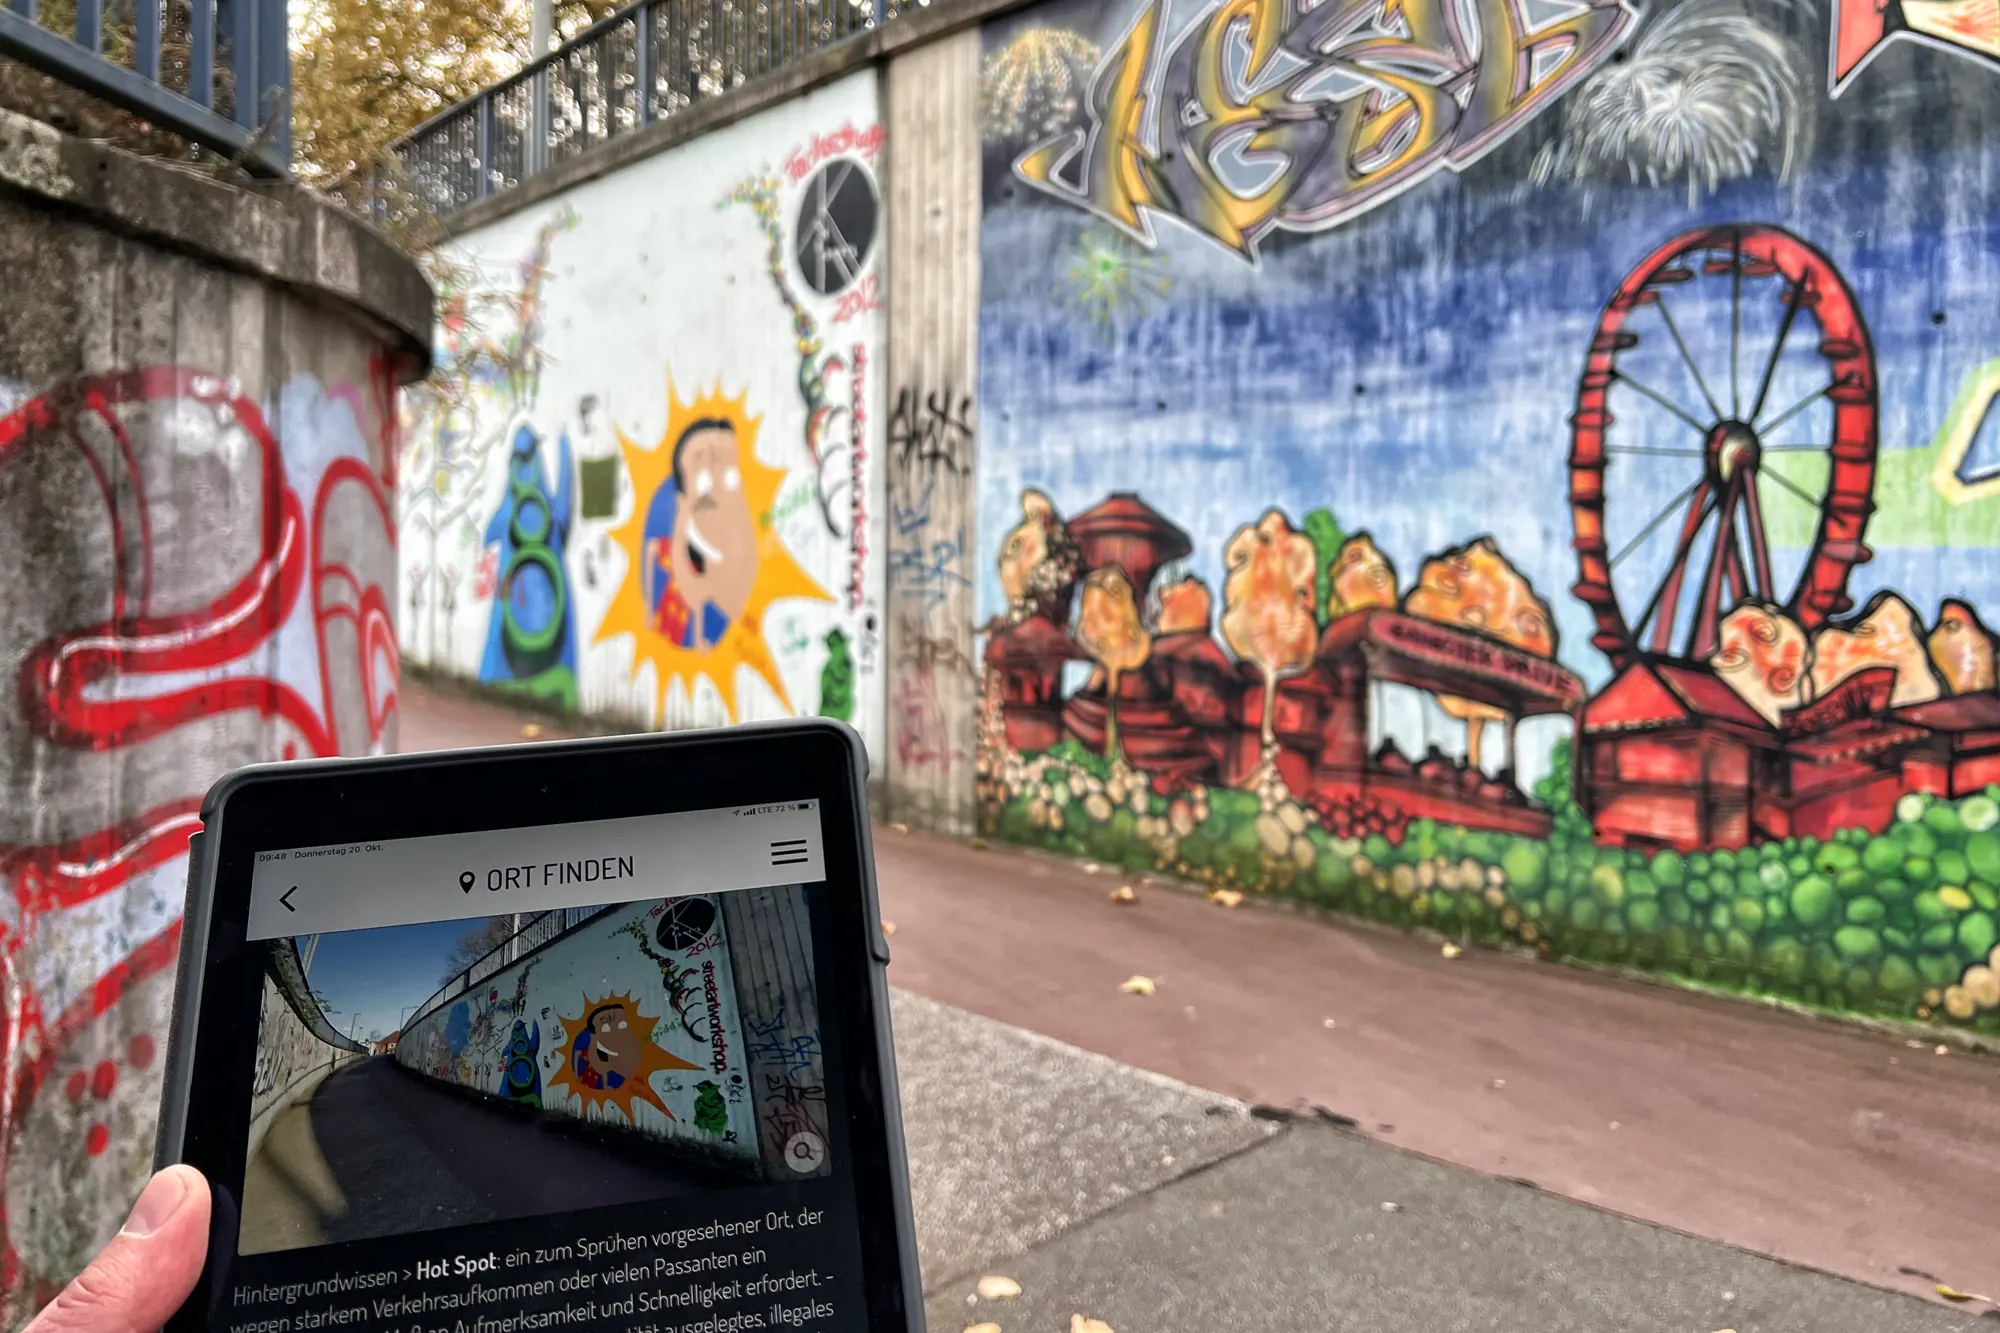 Streetart in Paderborn - 'Paderborn und seine Graffitis'